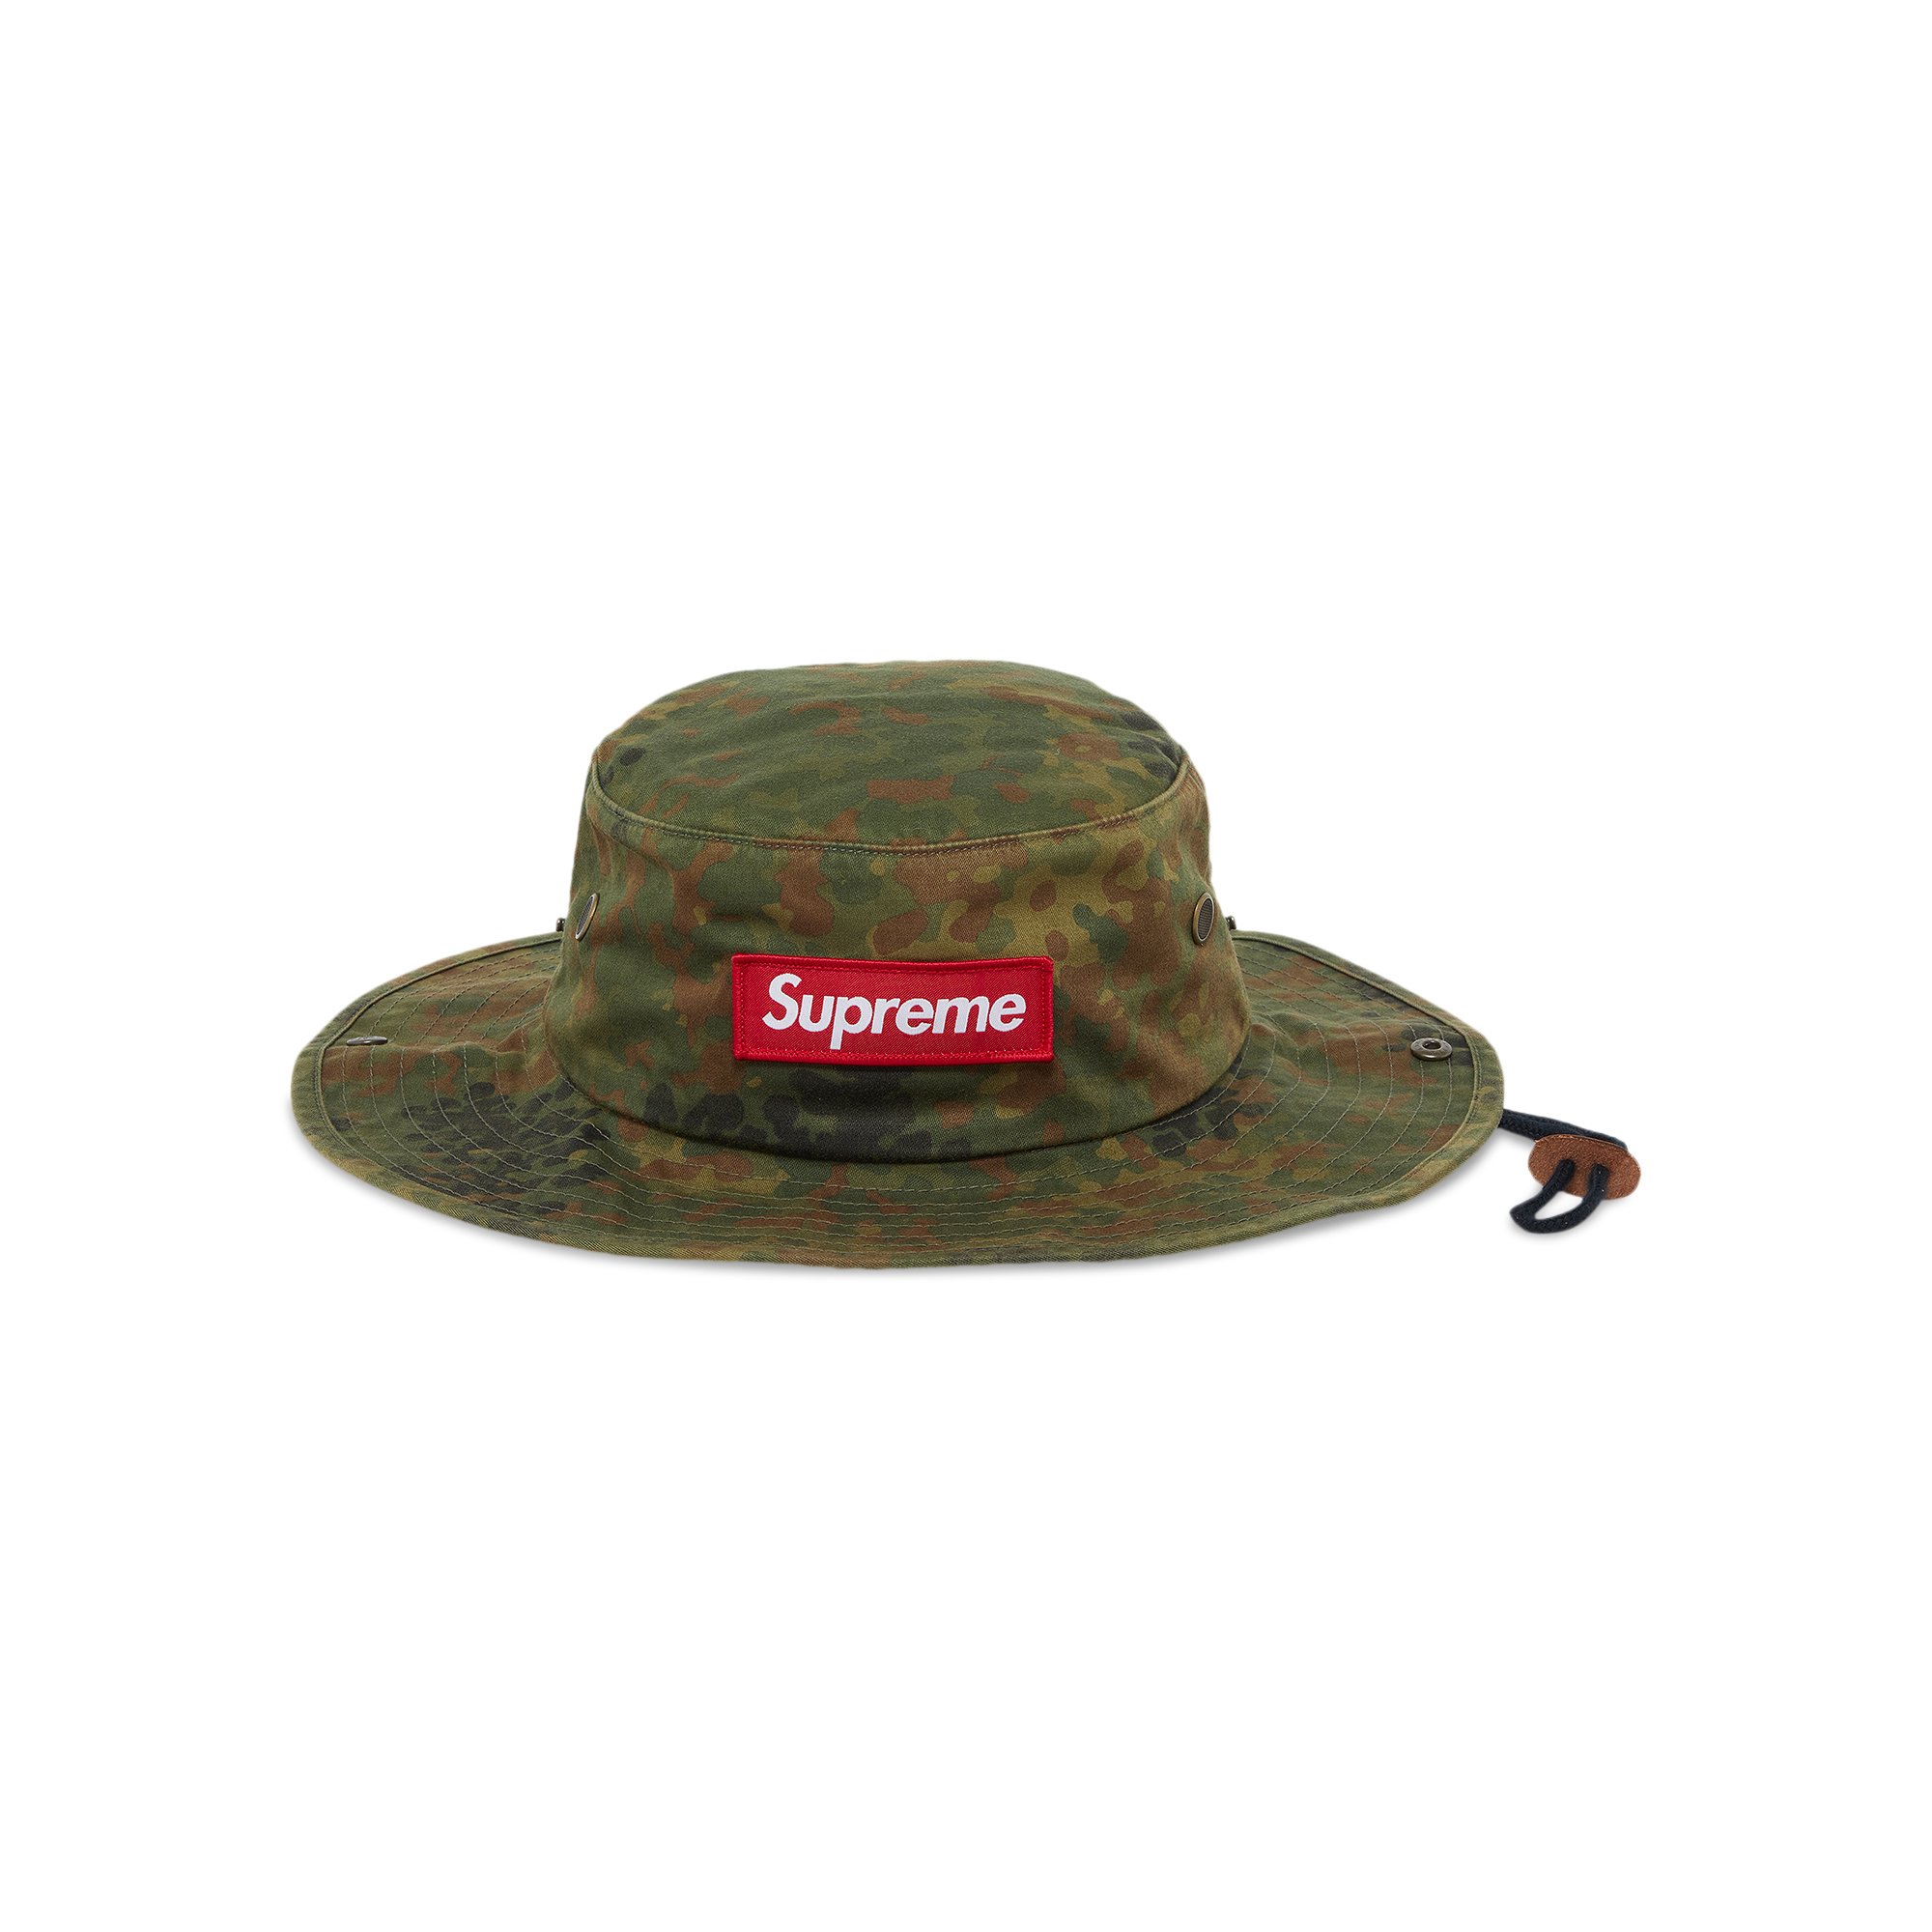 魅力の supreme military boonie - 帽子